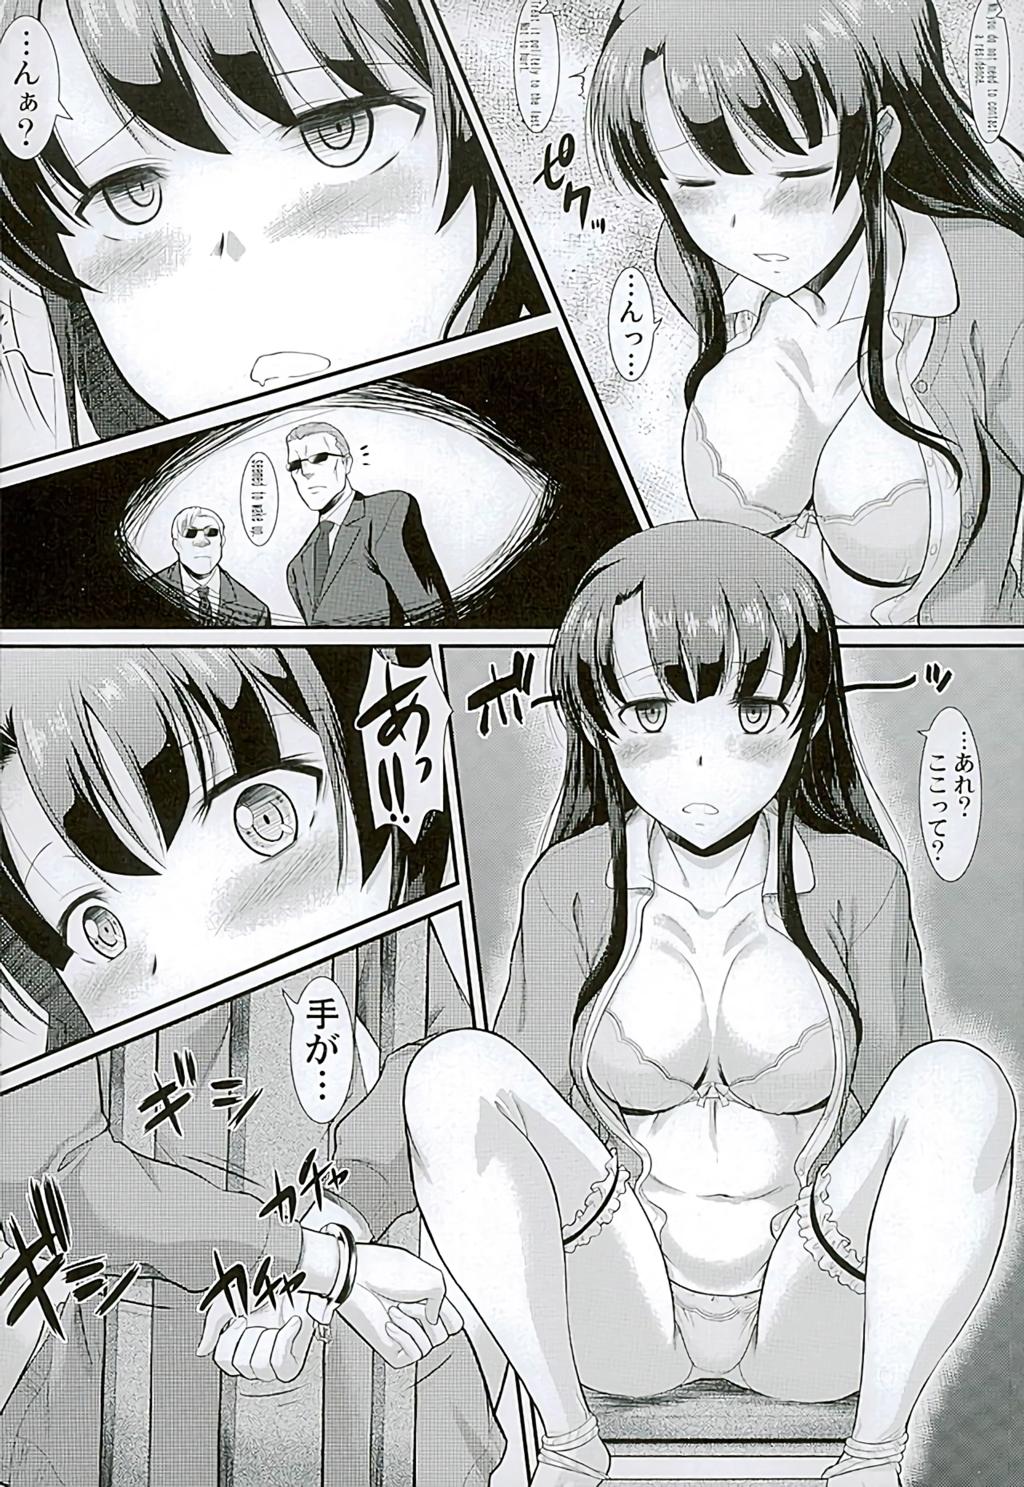 From Kimi wa Boku no Taiyou da - Saenai heroine no sodatekata Milf Porn - Page 5